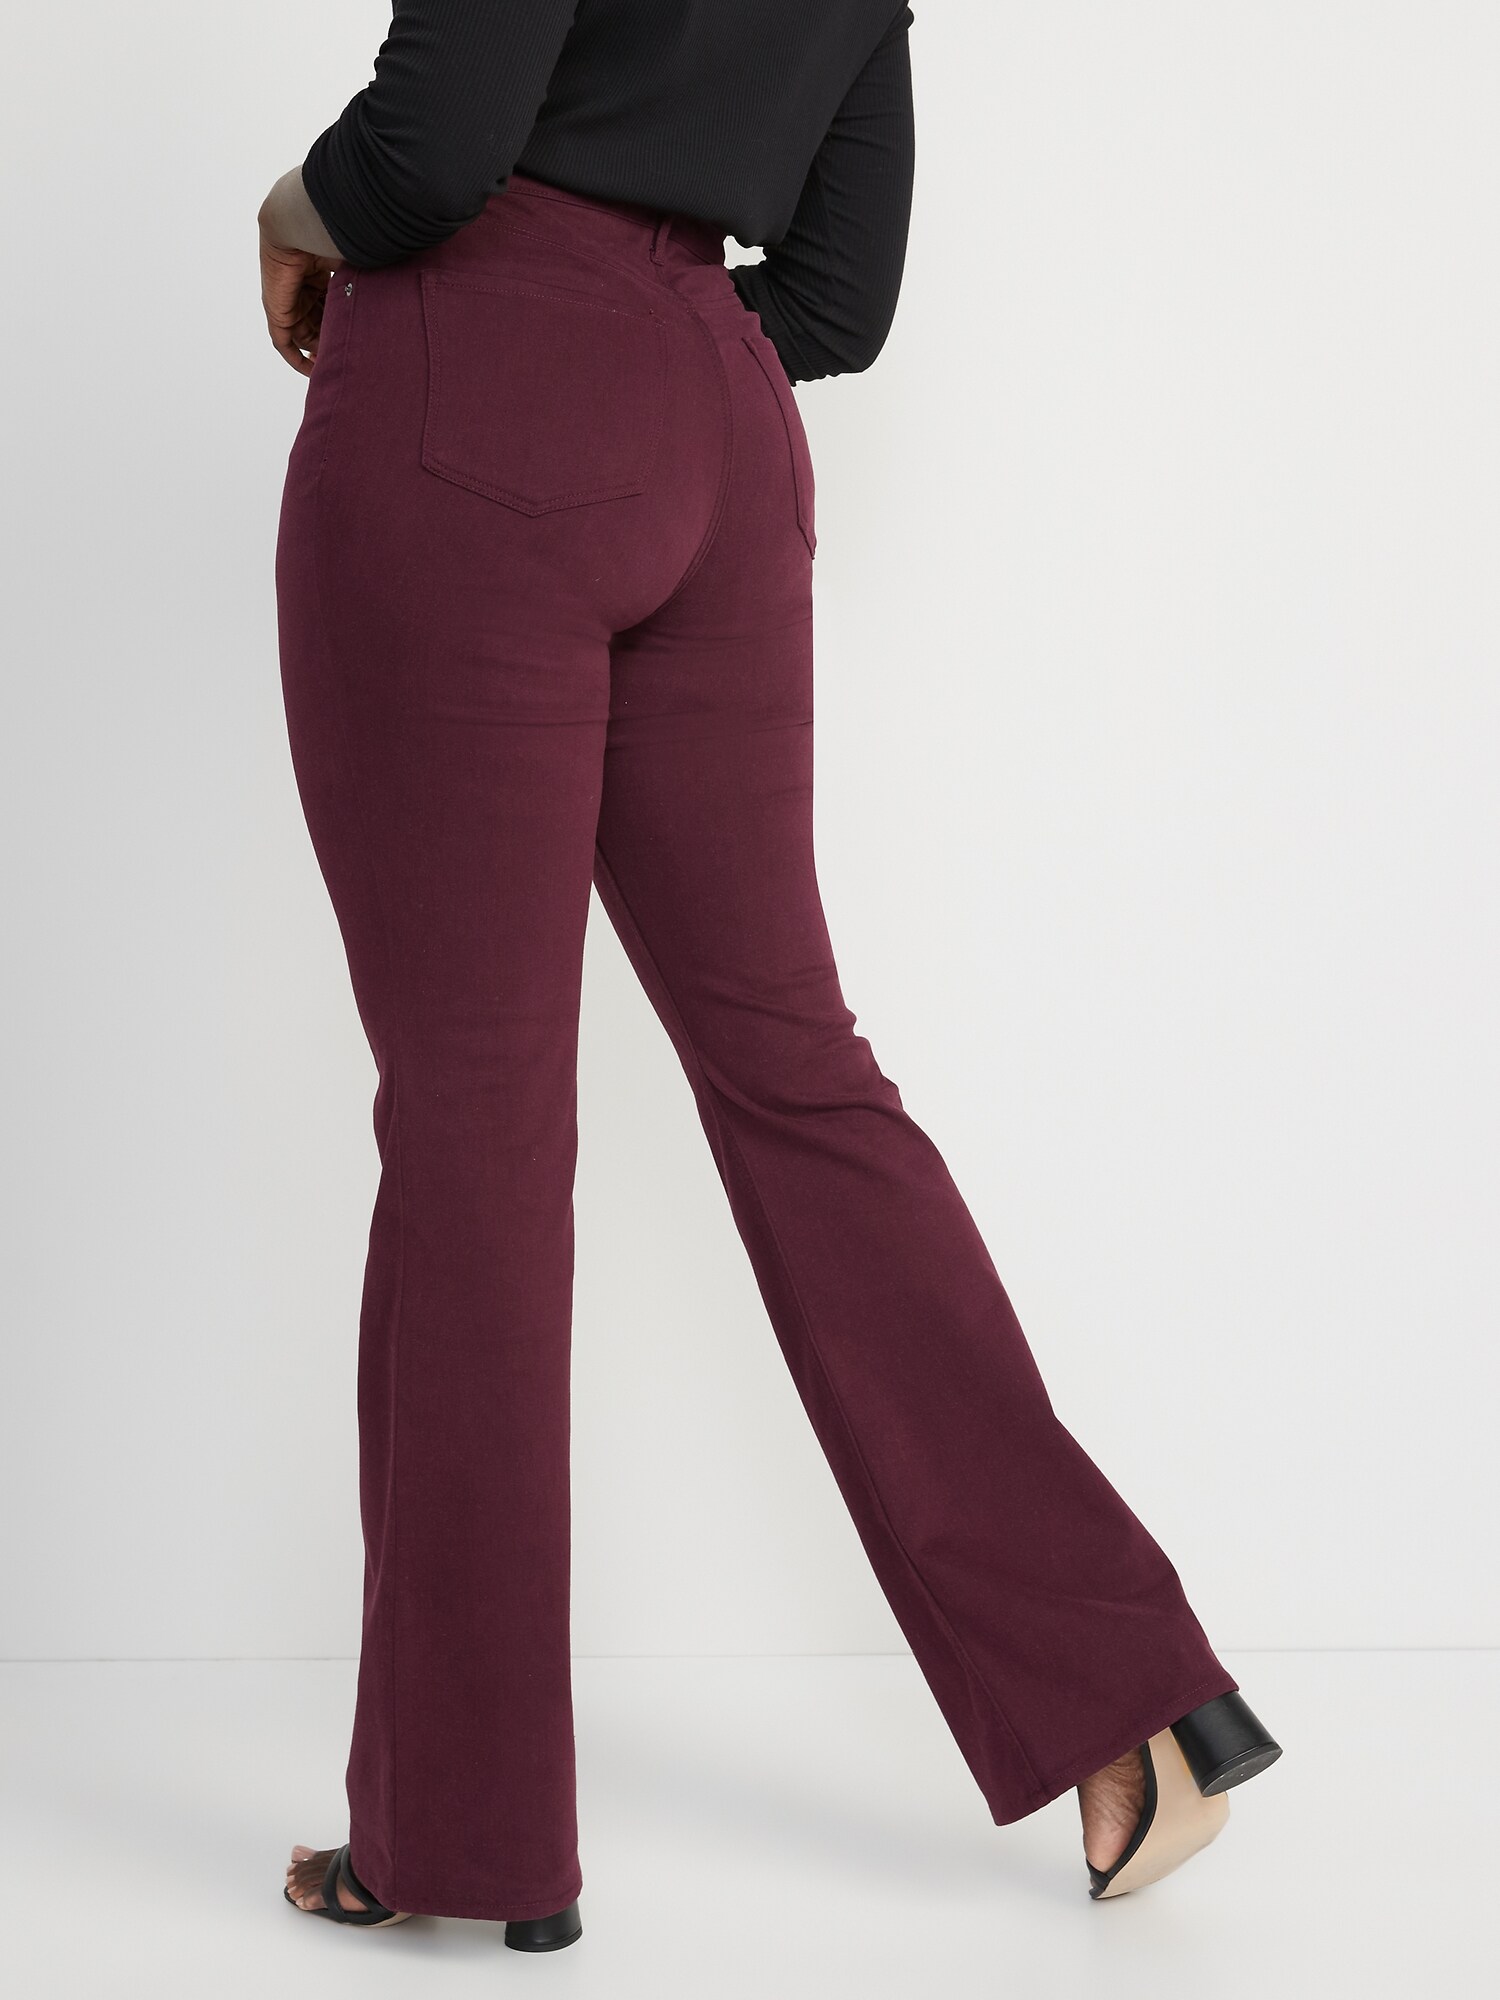 L/XL Polyester Women's Burgundy high waist long flares 